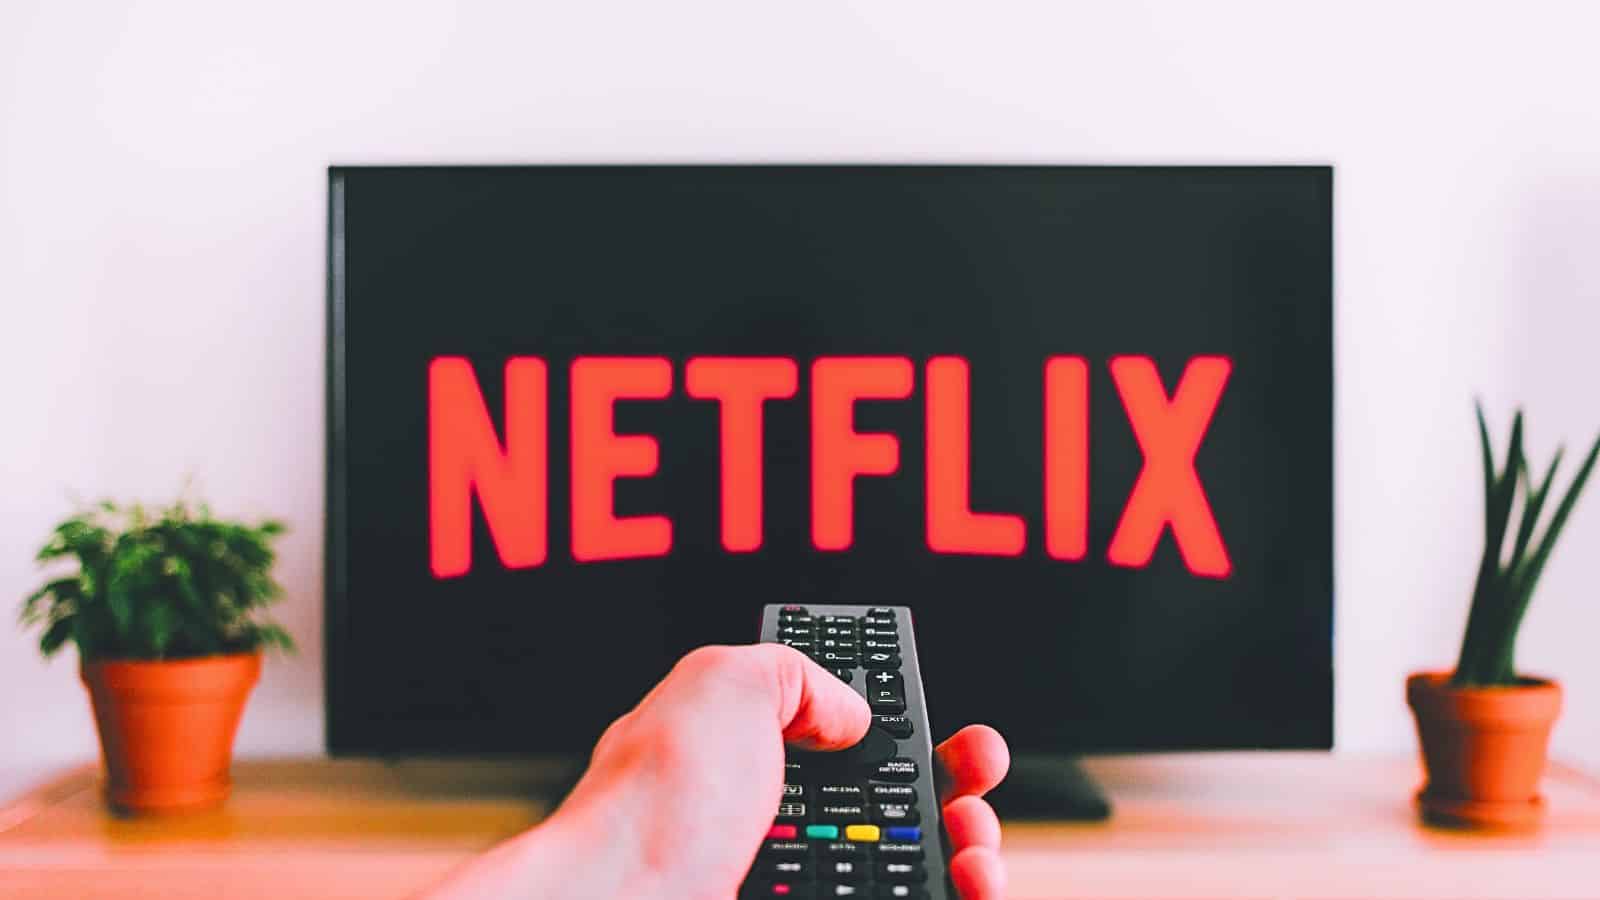 Netflix sconvolge l'abbonamento con pubblicità: cosa cambierà?